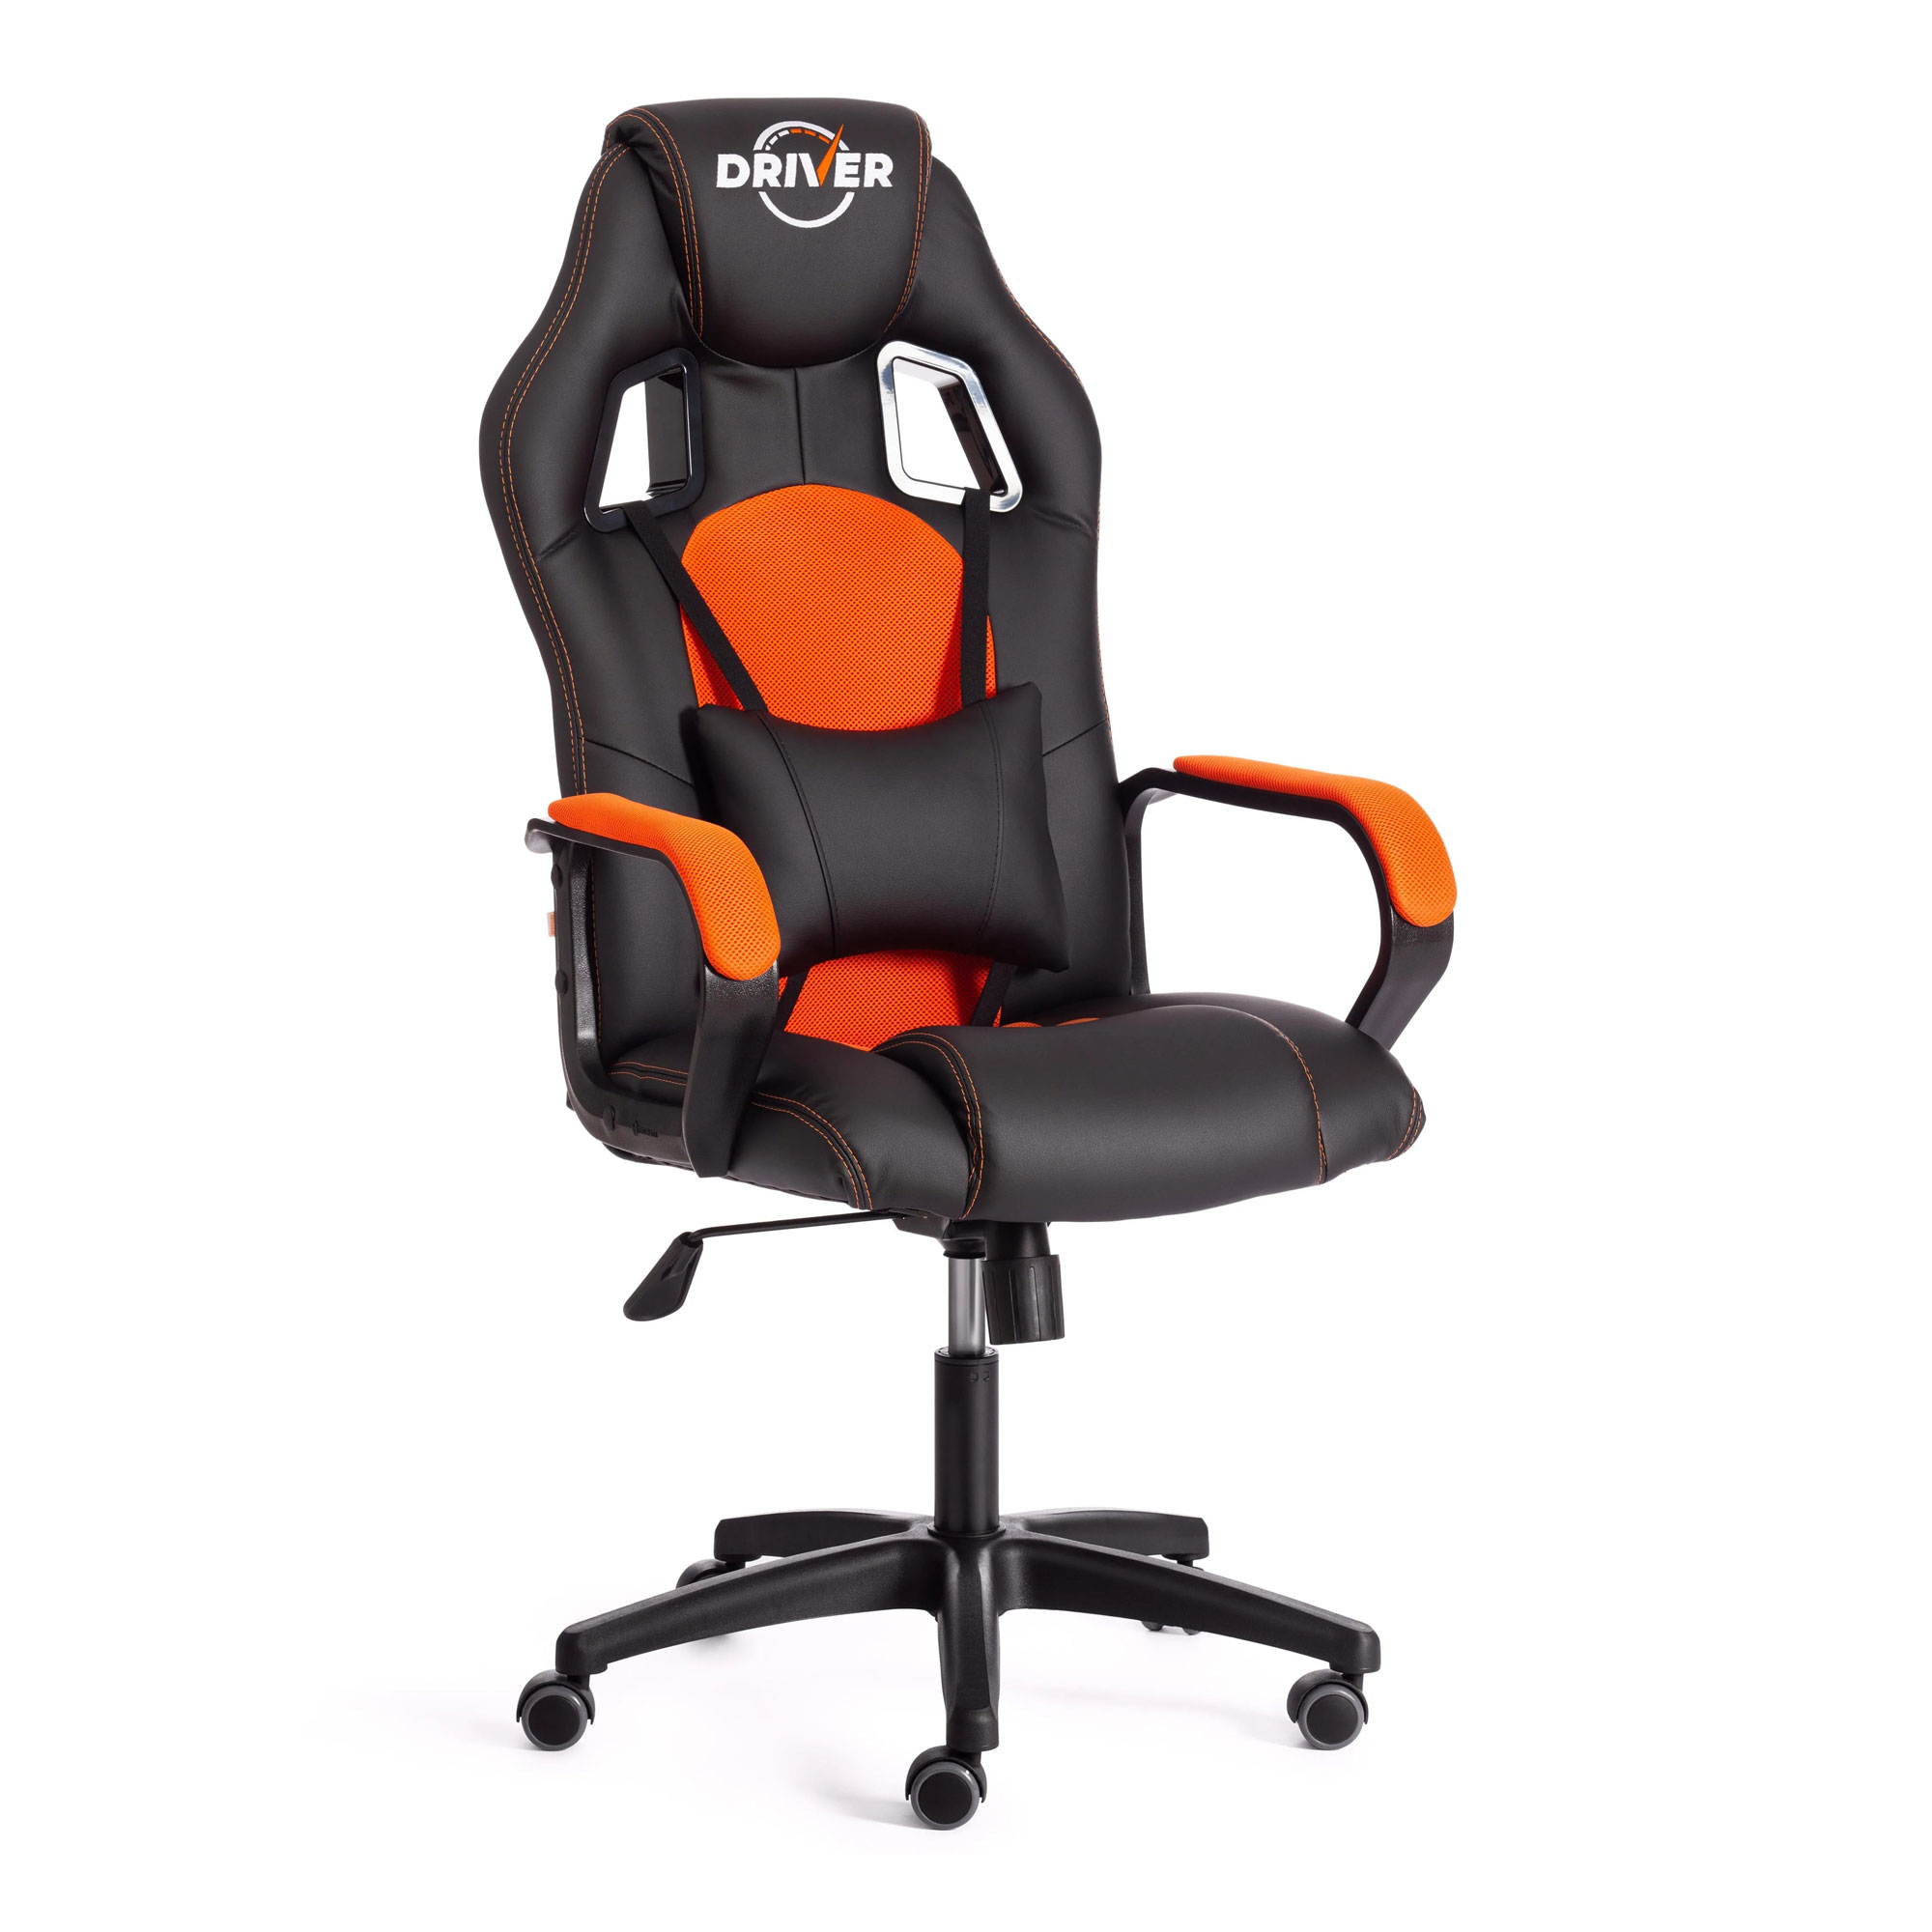 Кресло компьютерное TC Driver искусственная кожа чёрное с оранжевым 55х49х126 см кресло компьютерное tc driver искусственная кожа чёрное с бордовым 55х49х126 см